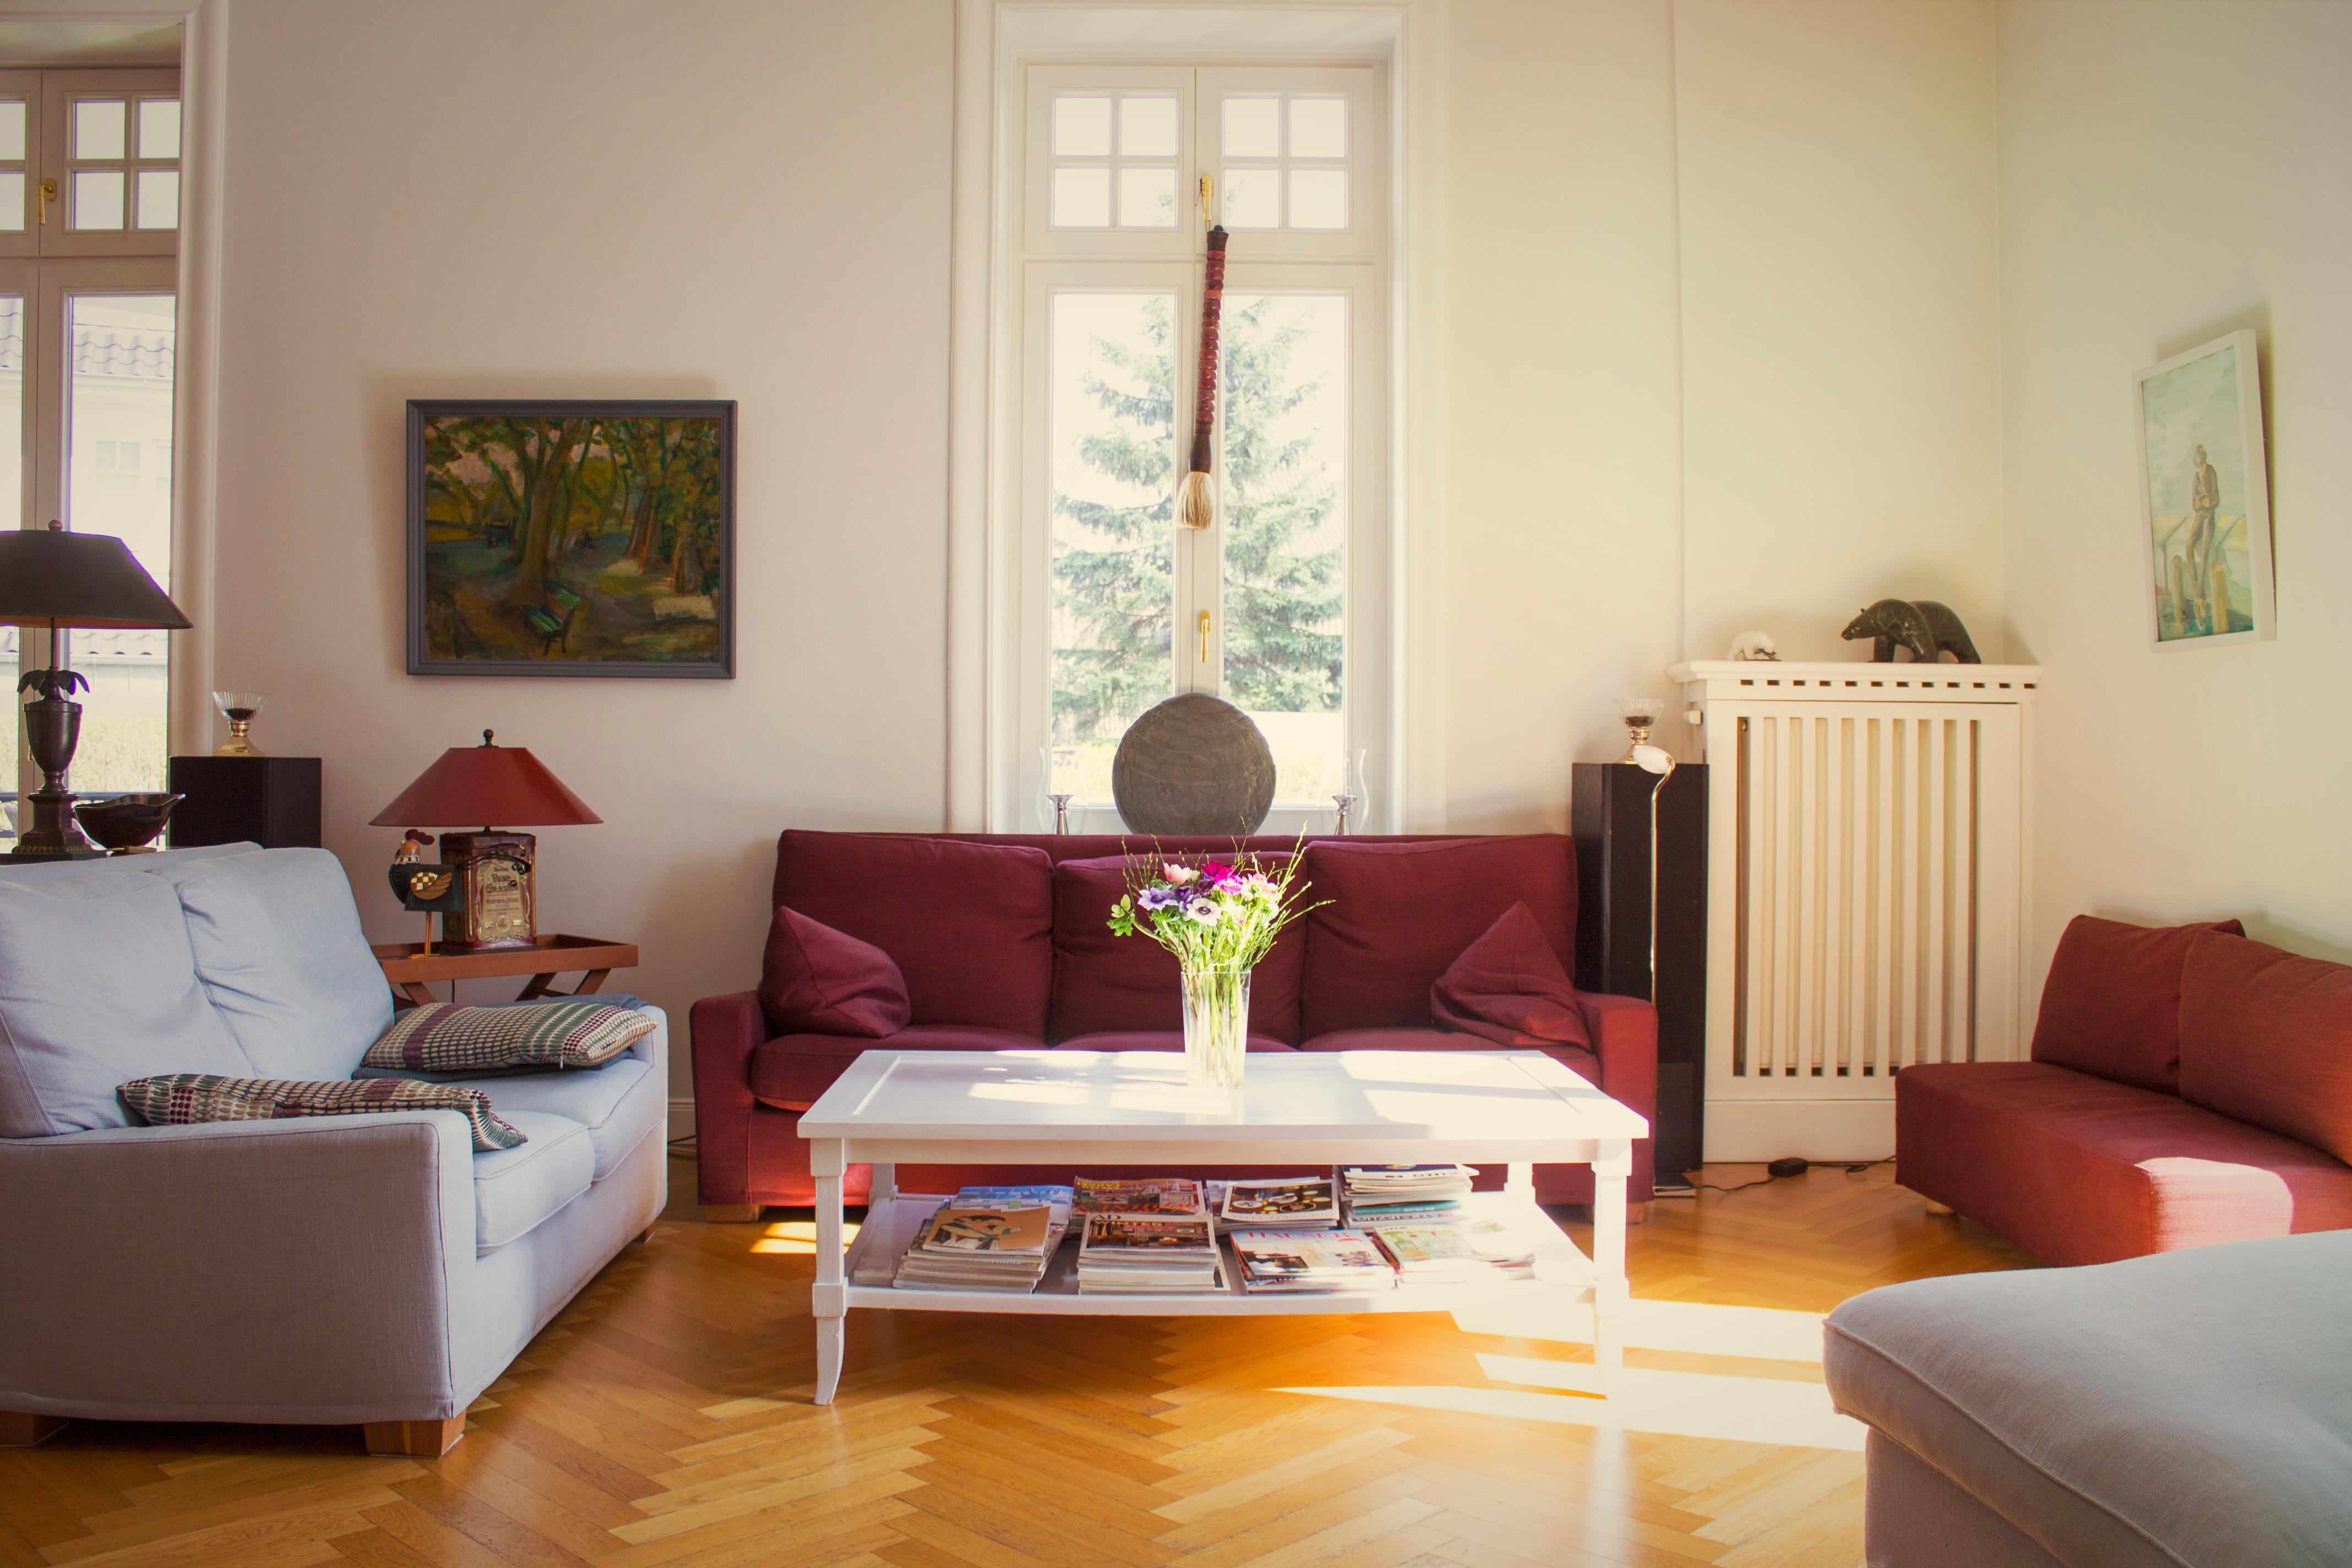 Brombeerfarbenes Sofa unter Fenster #wohnzimmer #hohesfenster ©Feng Shui - Energie im Fluss